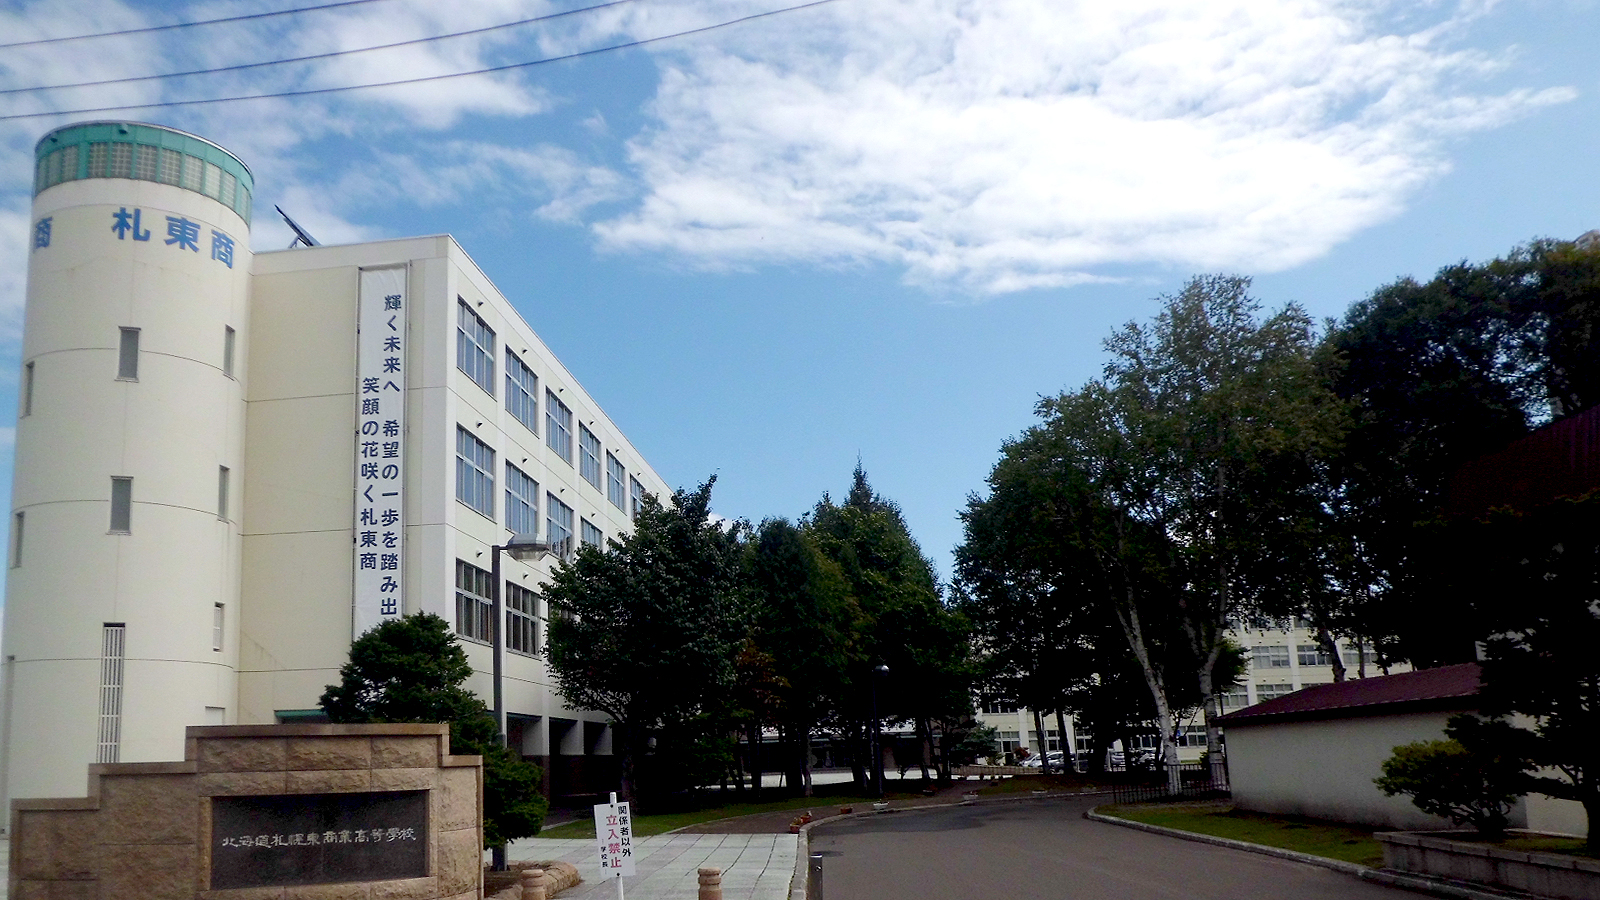 札幌東商業高校の校舎正面